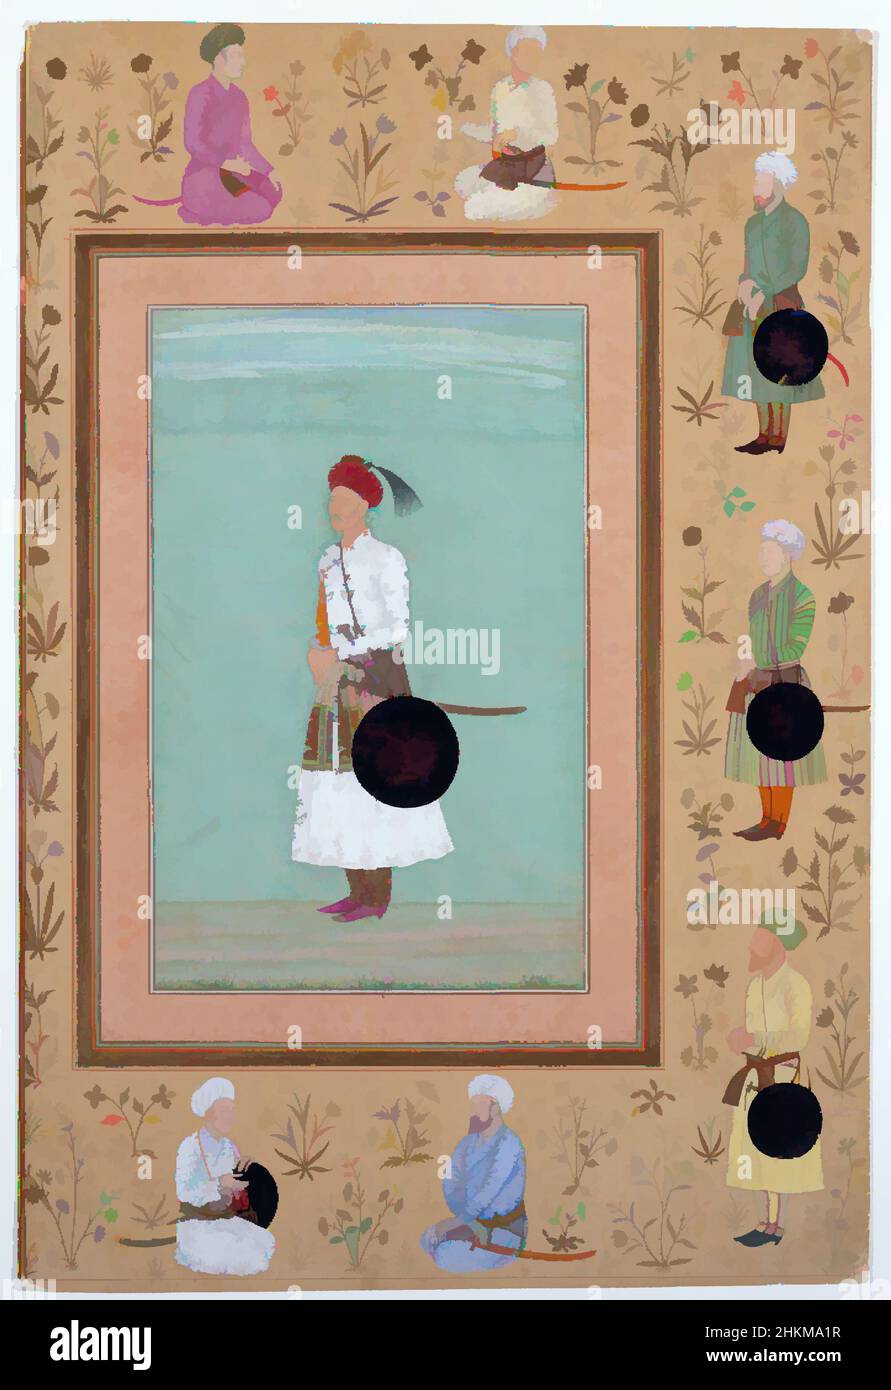 Art Inspired by Page from the Late Shah Jahan Album, Indian, Reign of Shah Jahan, 1627-1657, Mughal Period, 1526-1858, c.1650-1660, Inchiostro, acquerello opaco, e oro su carta, fatto in India, Asia, disegni & acquerelli, dipinti, immagine: 8 1/16 x 5 1/8 pollici (20,5 x 13 cm, opere classiche modernizzate da Artotop con un tuffo di modernità. Forme, colore e valore, impatto visivo accattivante sulle emozioni artistiche attraverso la libertà delle opere d'arte in modo contemporaneo. Un messaggio senza tempo che persegue una nuova direzione selvaggiamente creativa. Artisti che si rivolgono al supporto digitale e creano l'NFT Artotop Foto Stock